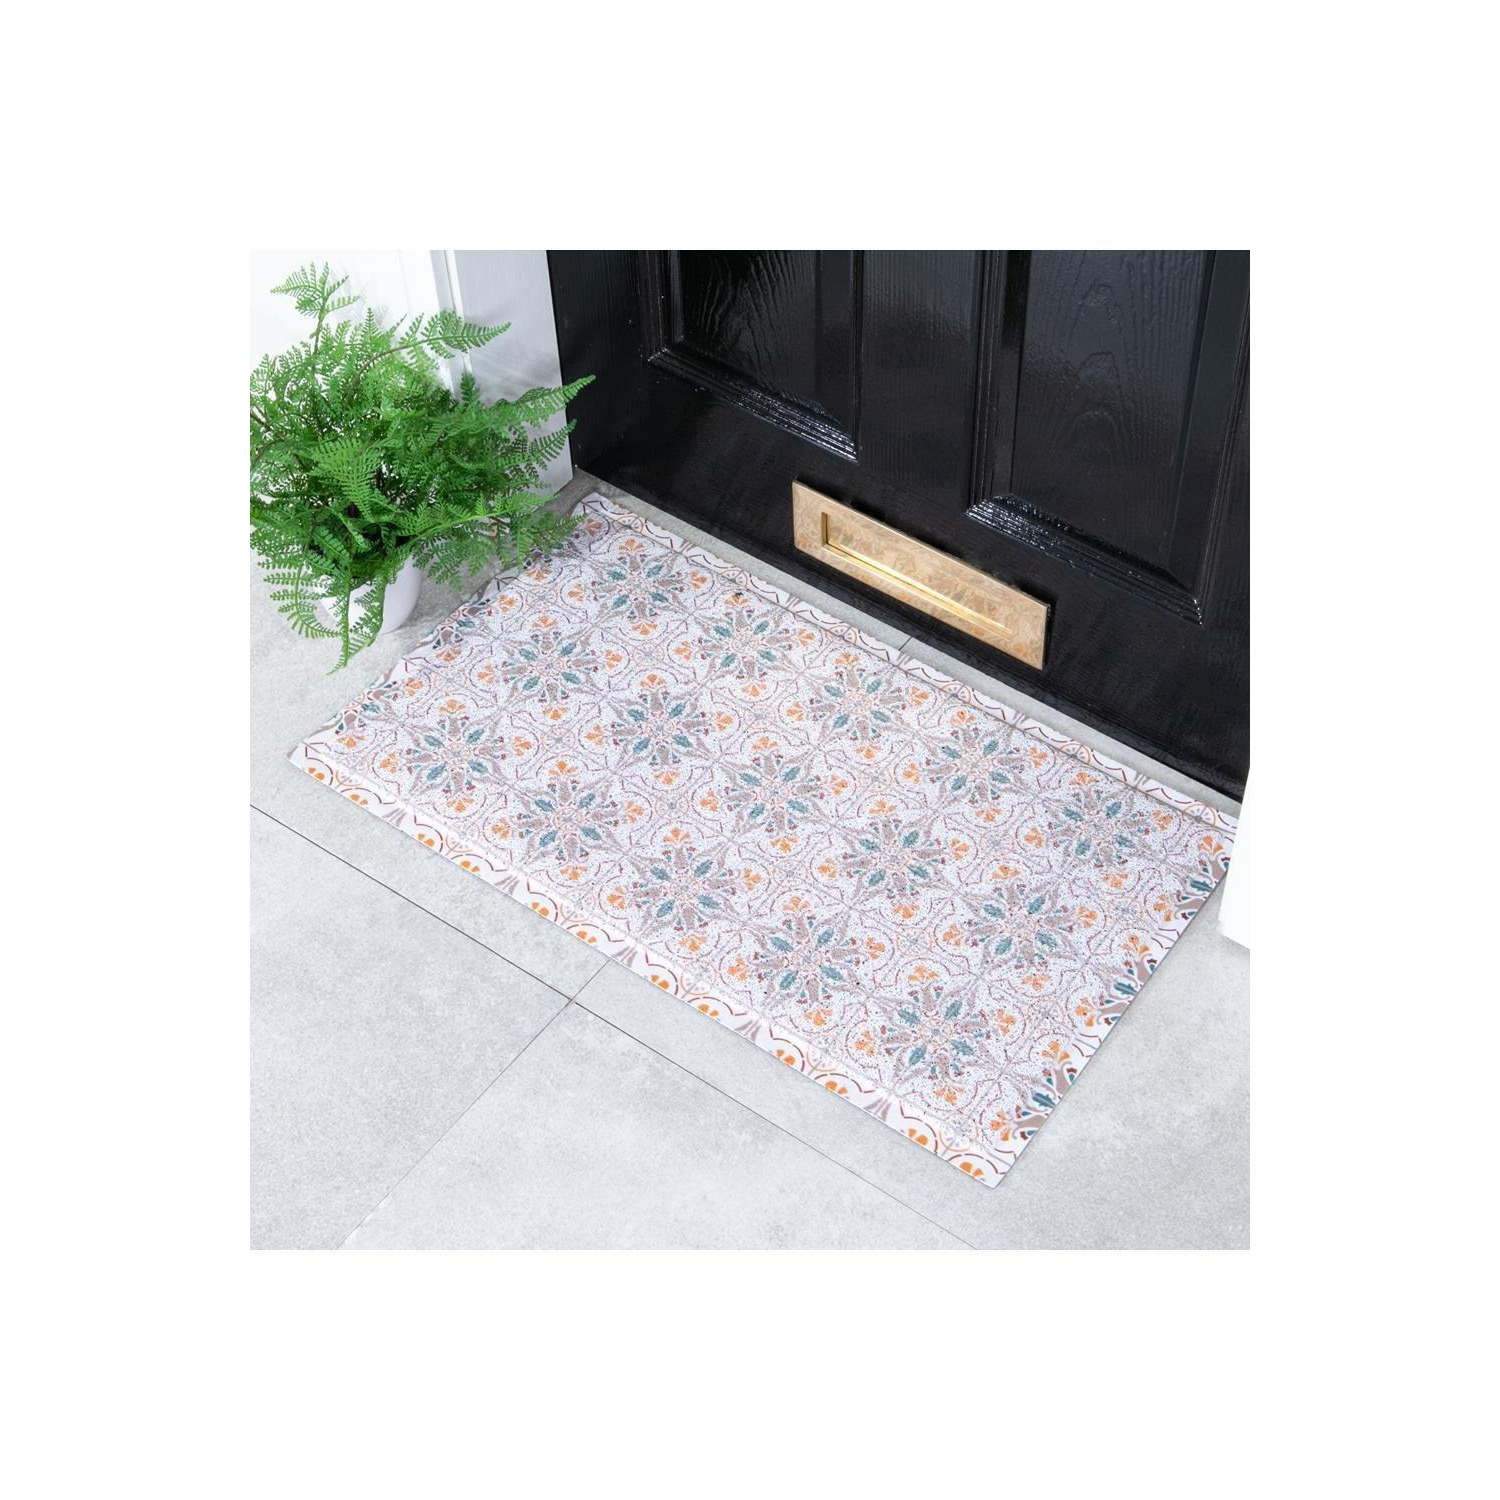 Mosaic Tiles Doormat (70 x 40cm) - image 1